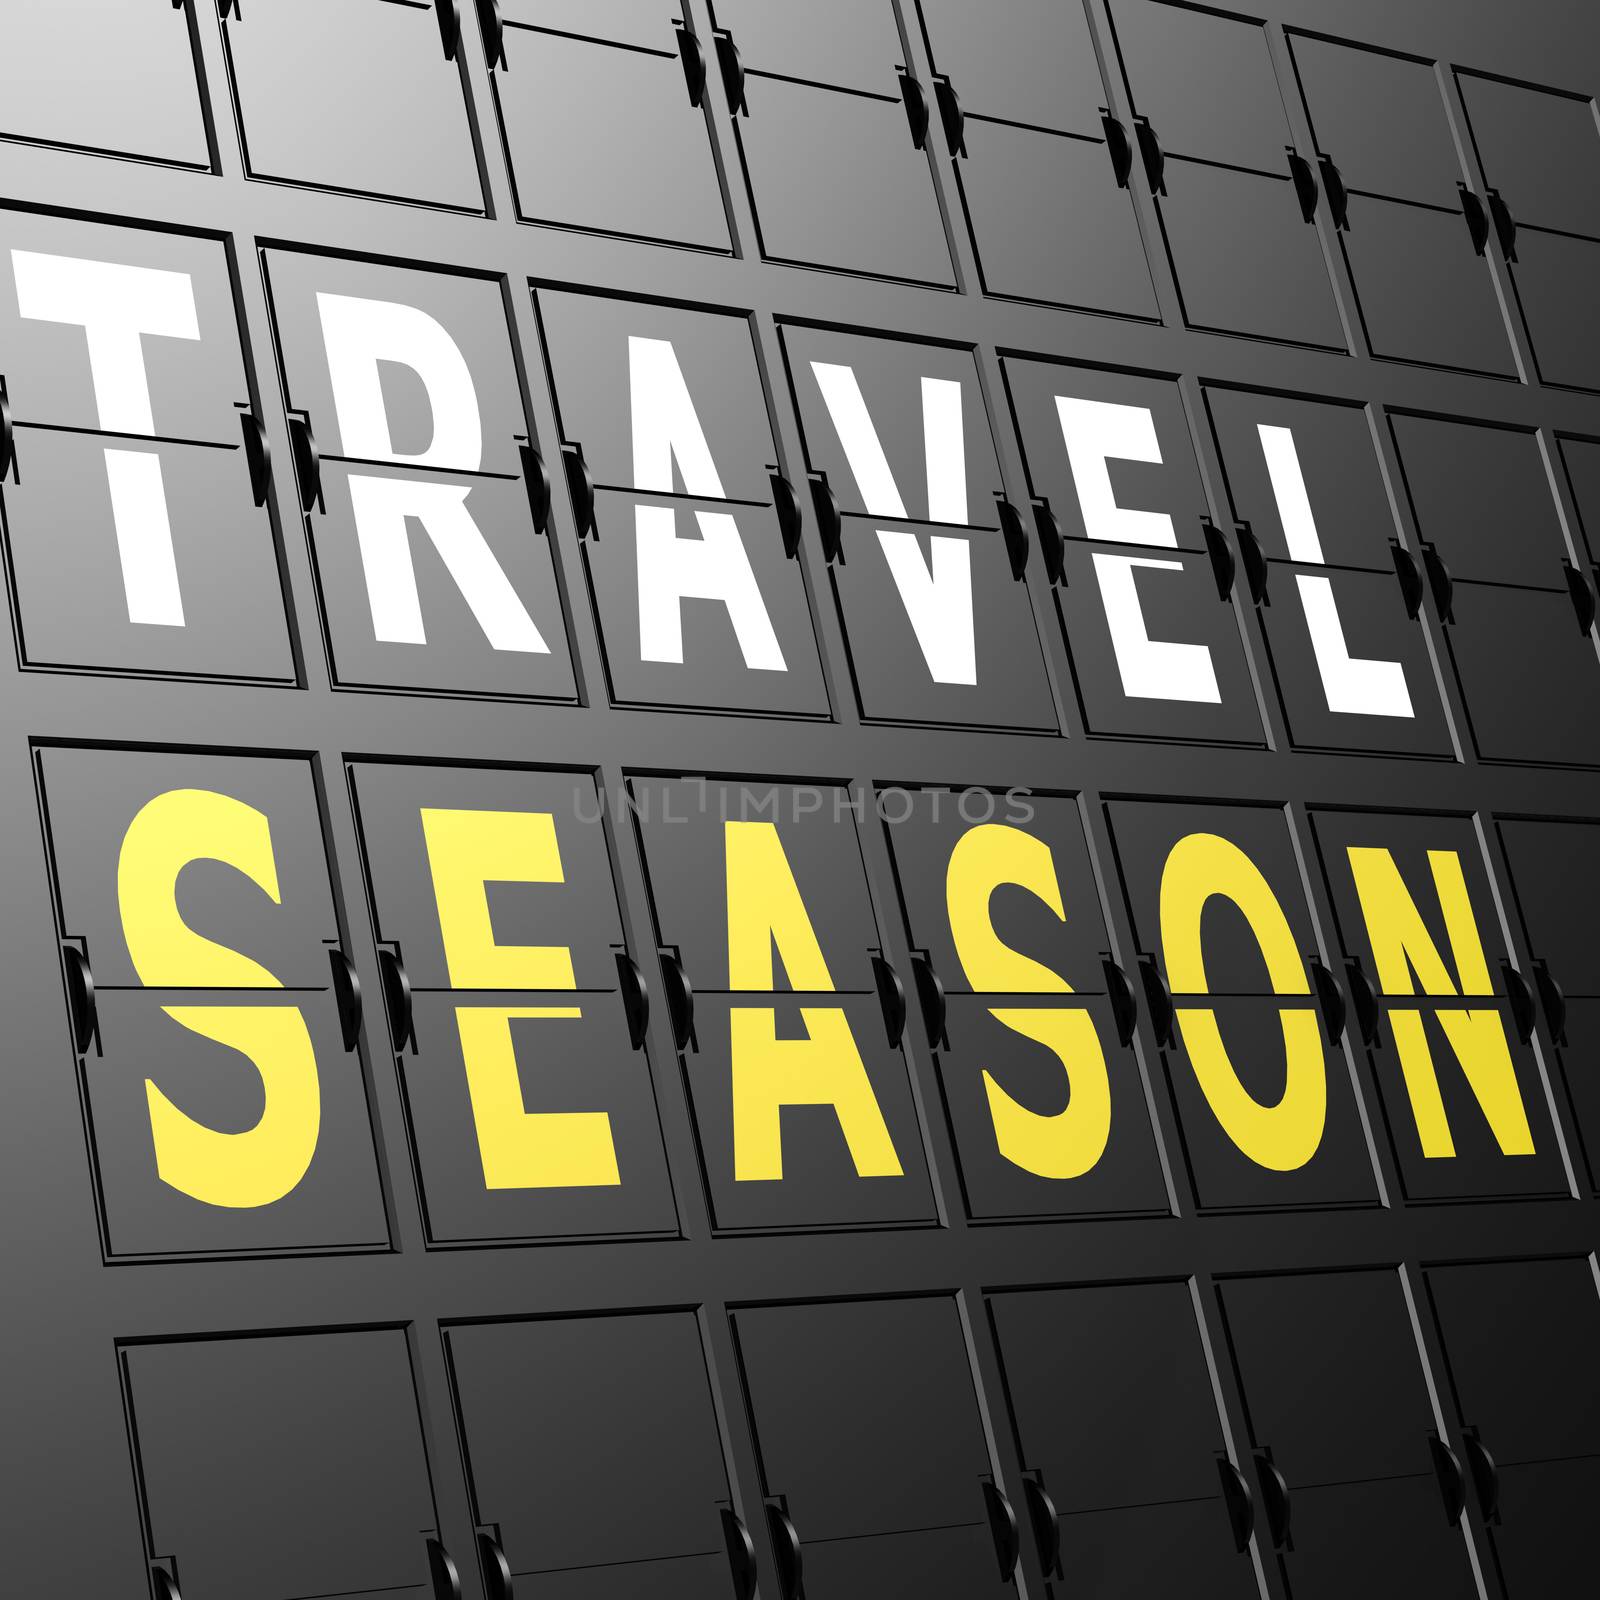 Airport display travel season by tang90246